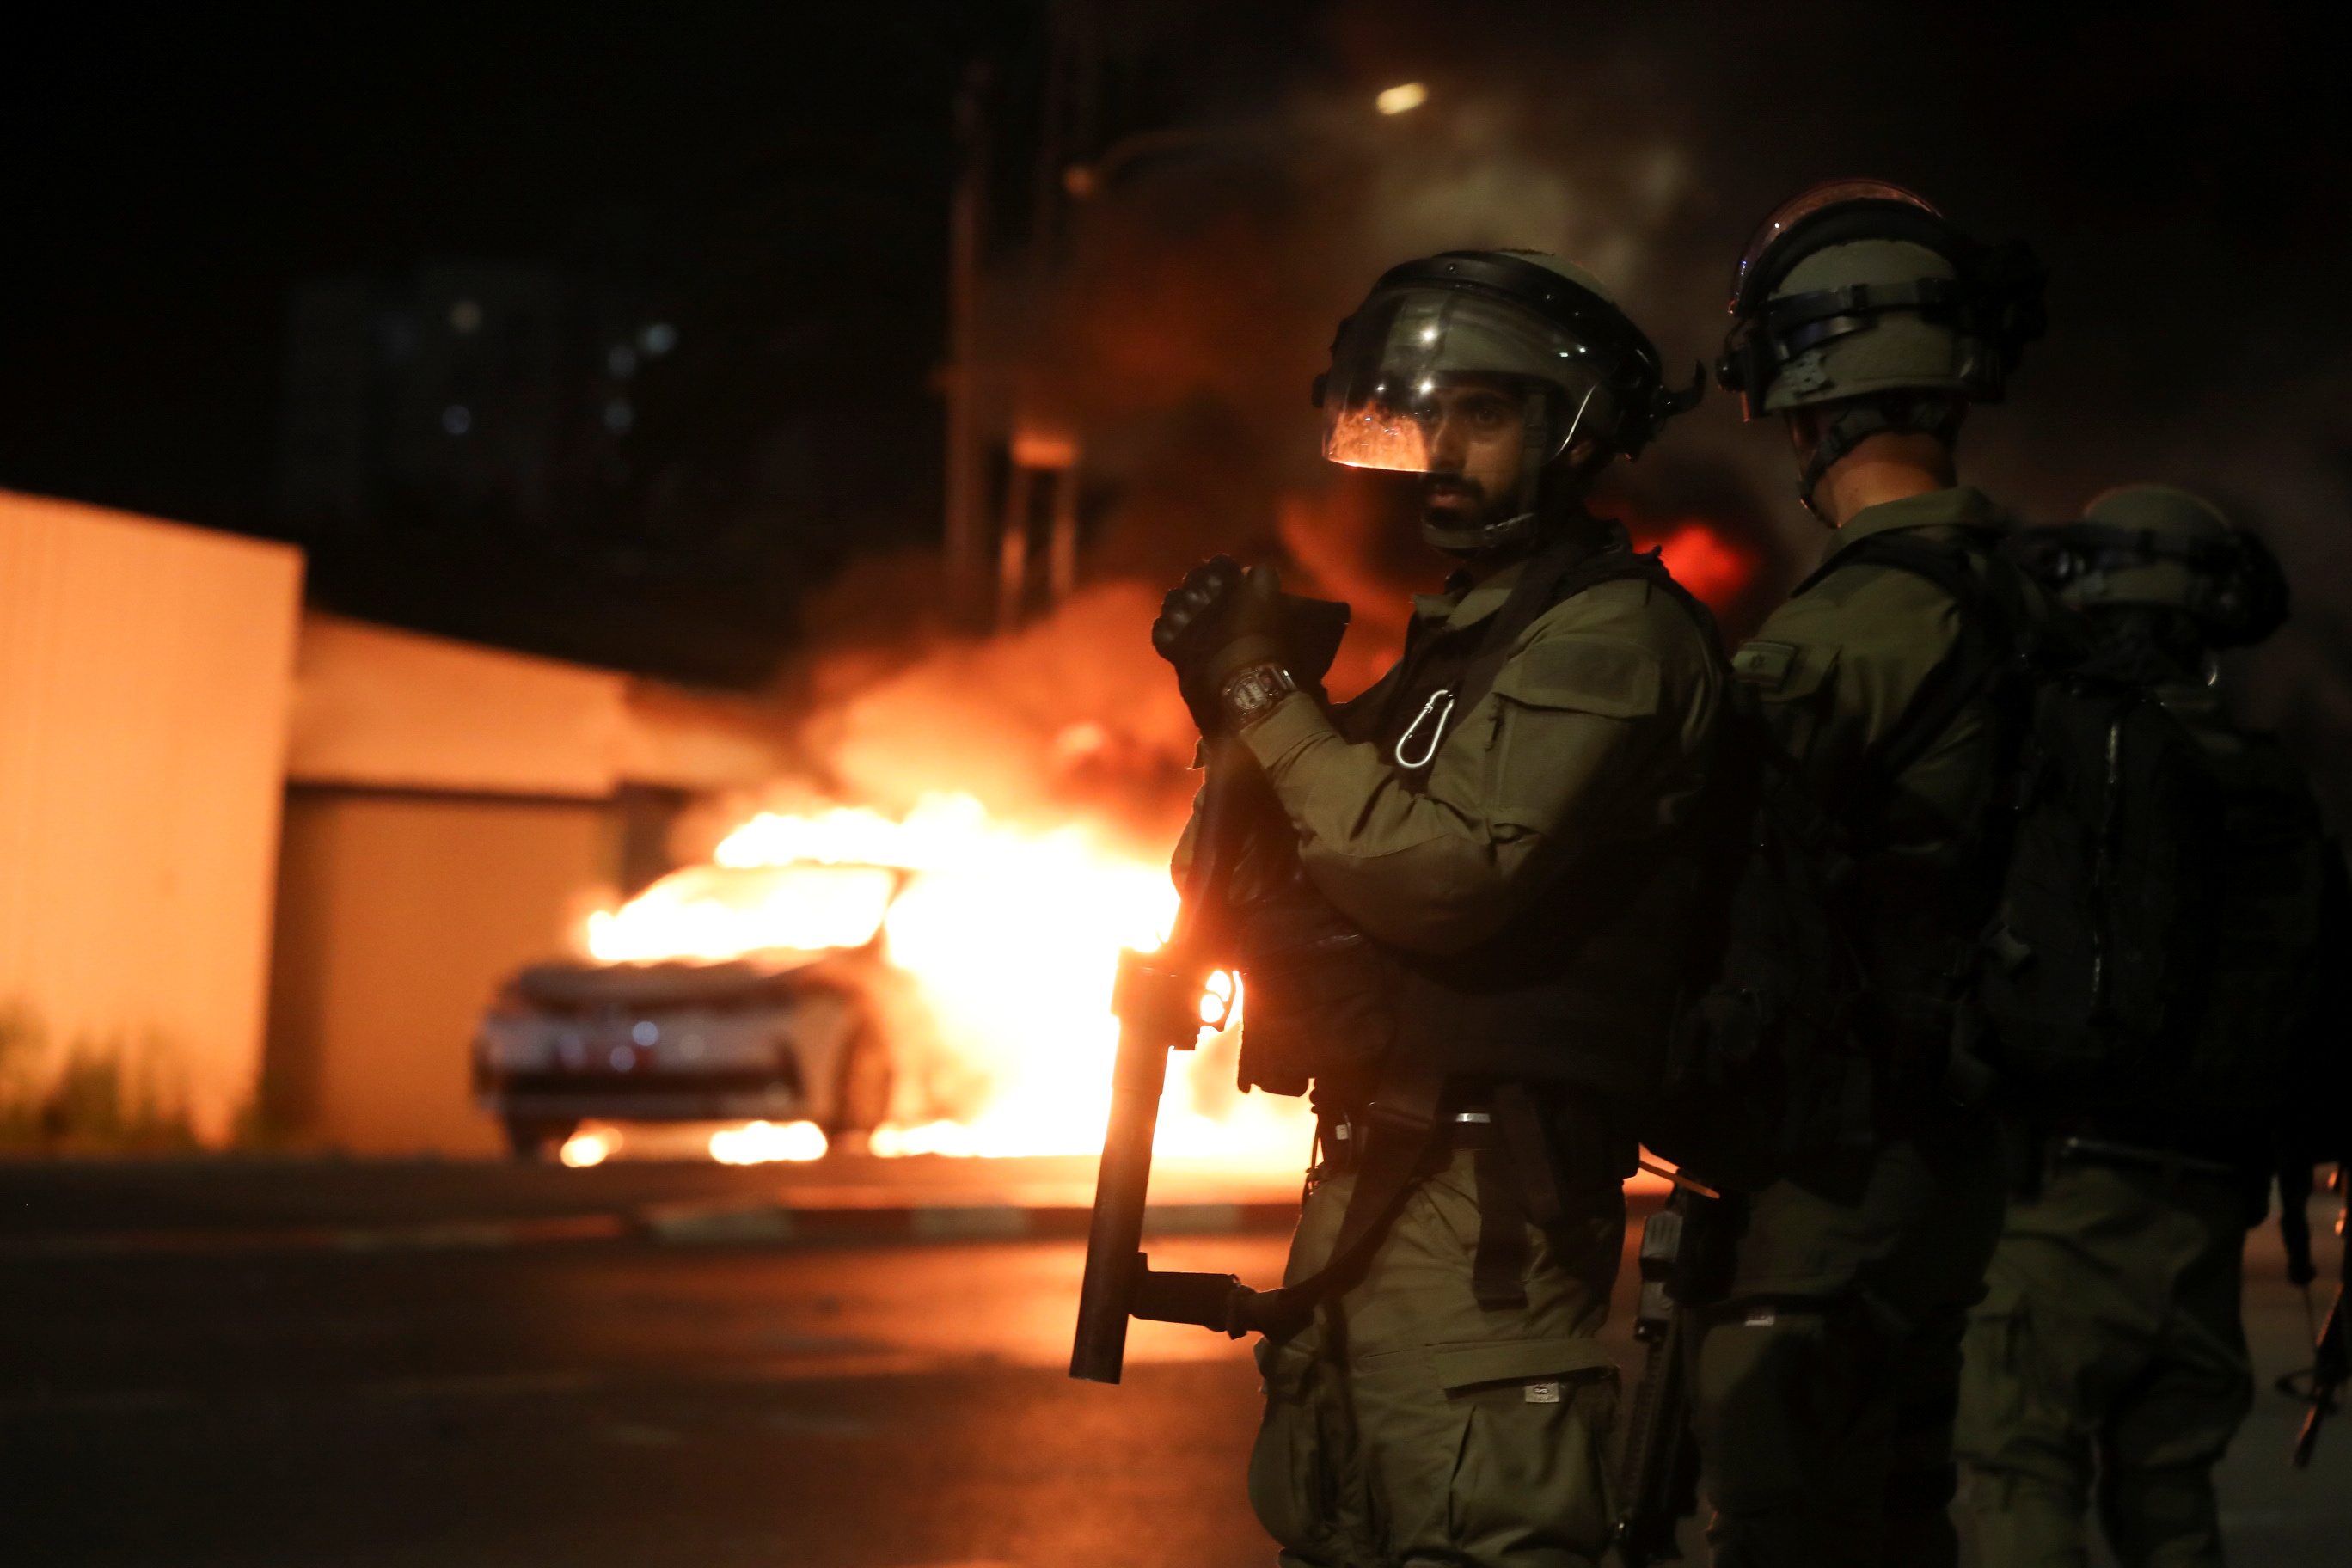 Miembros de las fuerzas de seguridad israelíes permanecen cerca de un coche de policía israelí en llamas durante los enfrentamientos entre la policía israelí y miembros de la minoría árabe del país en la ciudad árabe-judía de Lod, Israel 12 de mayo de 2021. REUTERS/Ammar Awad